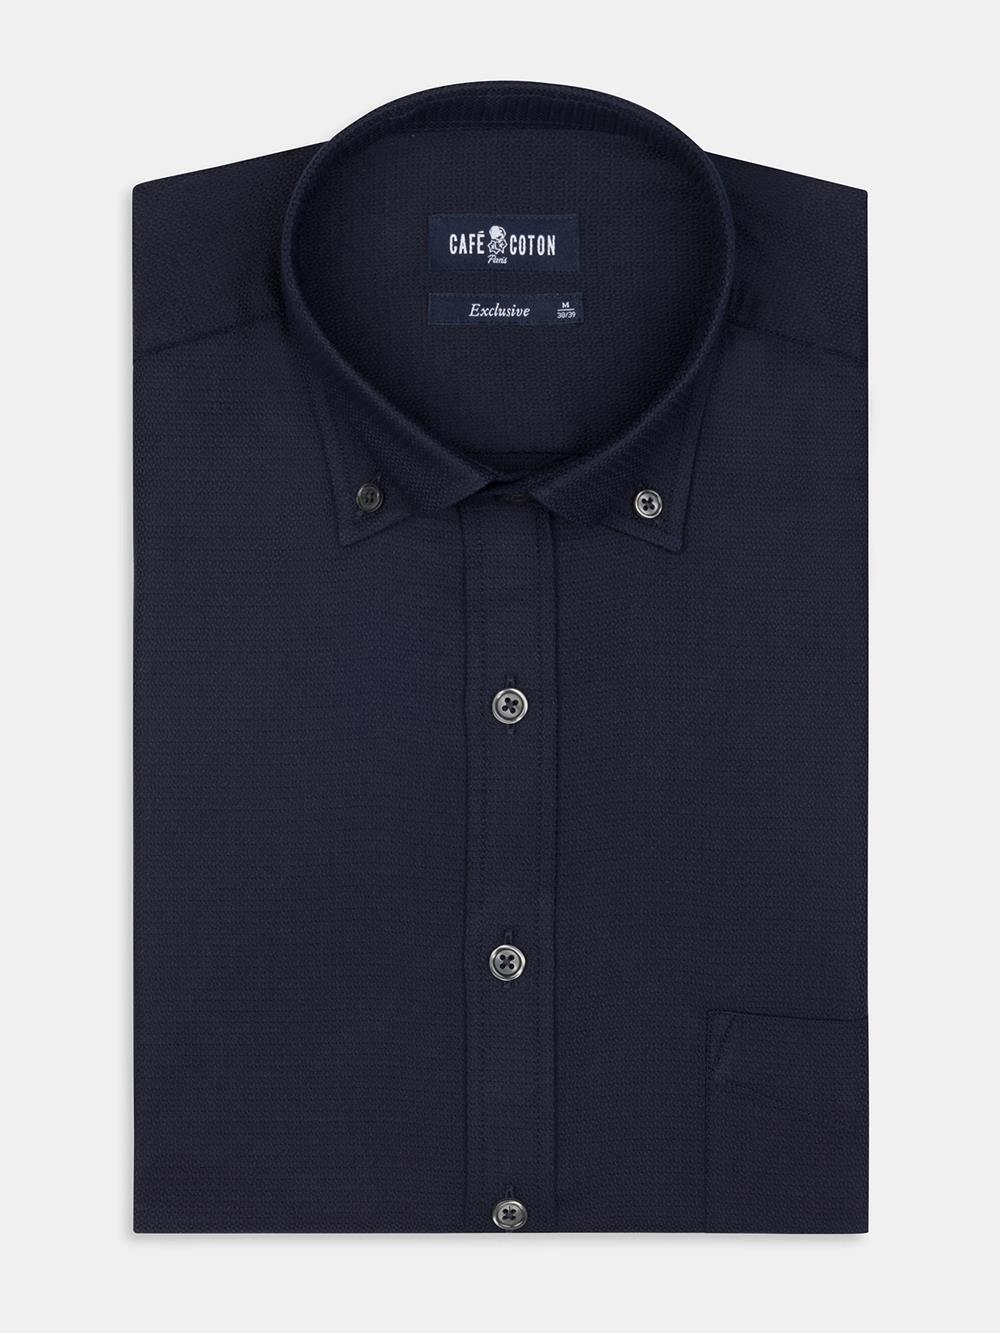 Camisa Horace navy texturizada - Cuello Abotonado